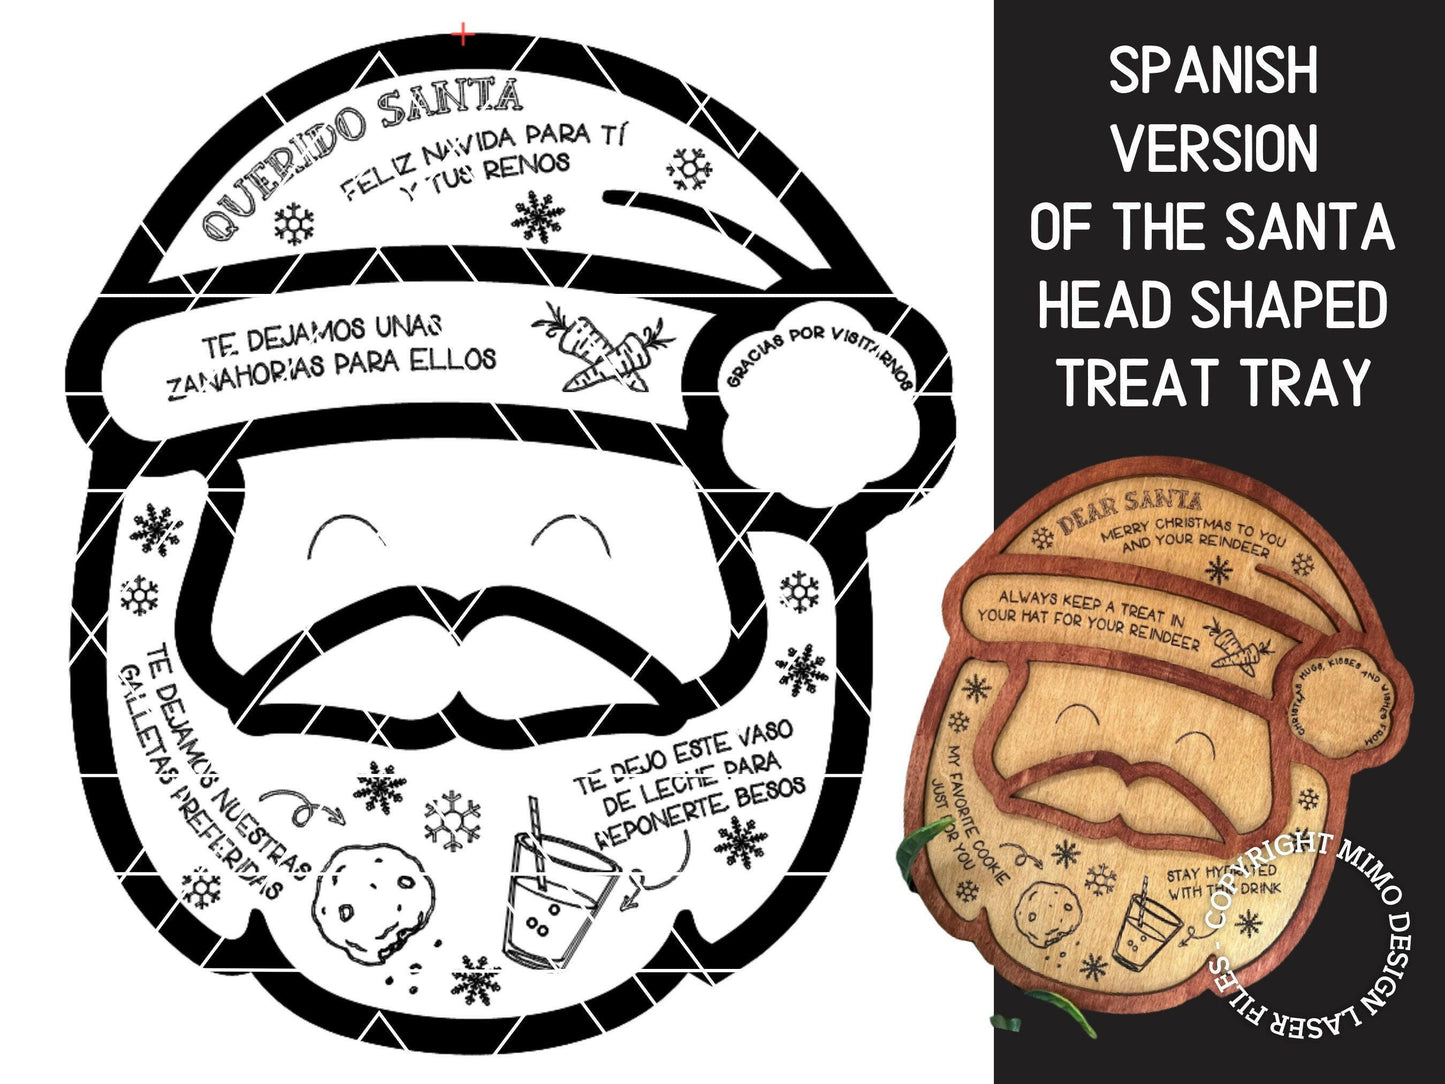 SPANISH Version of the Santa Shaped Treat Tray